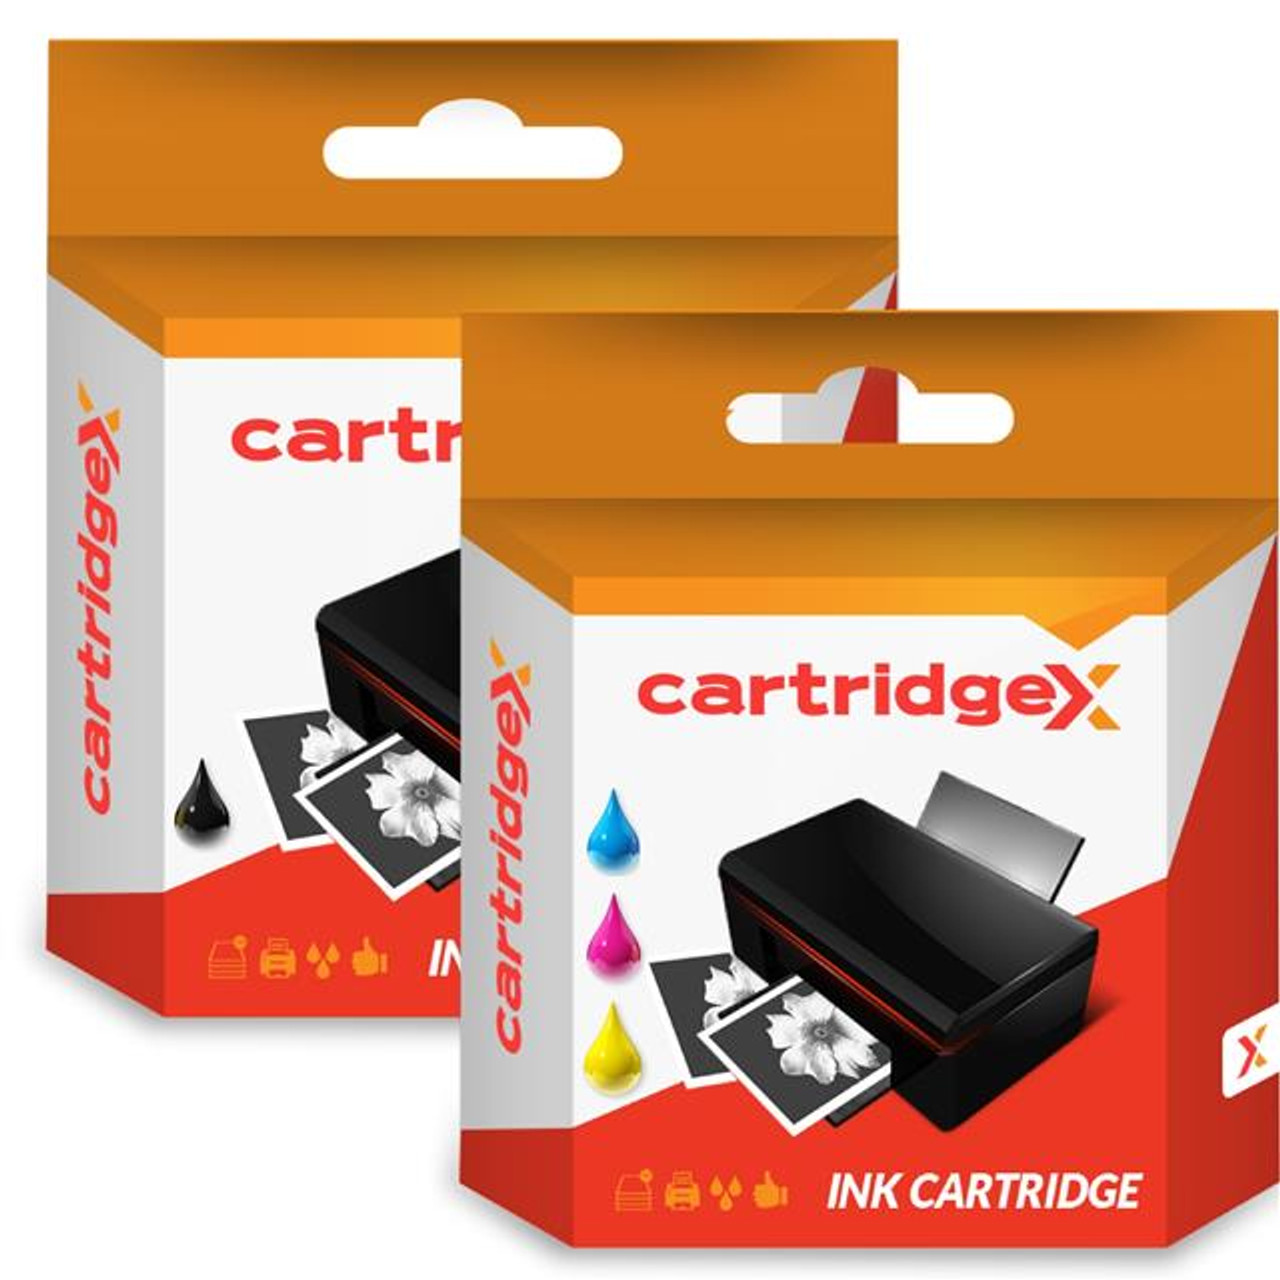 Compatible Black & Colour Ink Cartridge For Hp 78xl & 45 Deskjet 960c 970cse